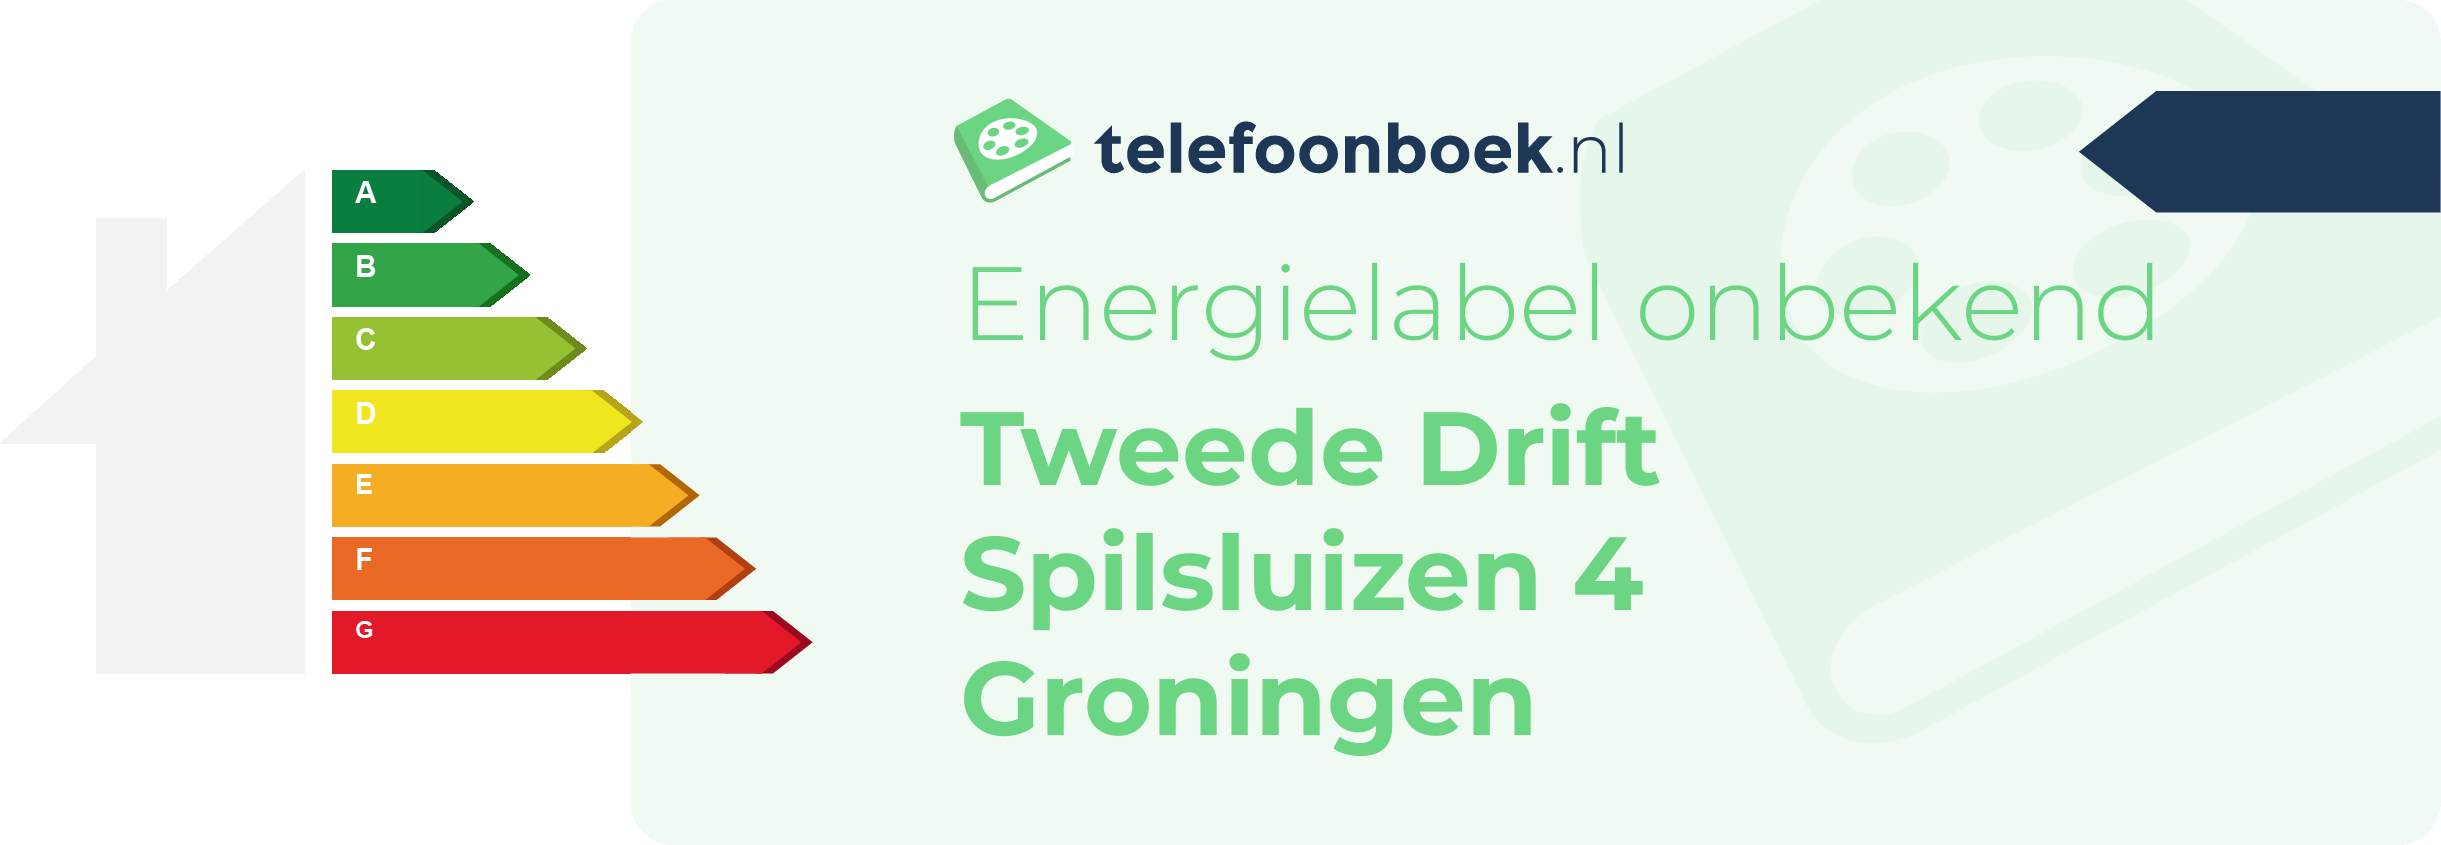 Energielabel Tweede Drift Spilsluizen 4 Groningen